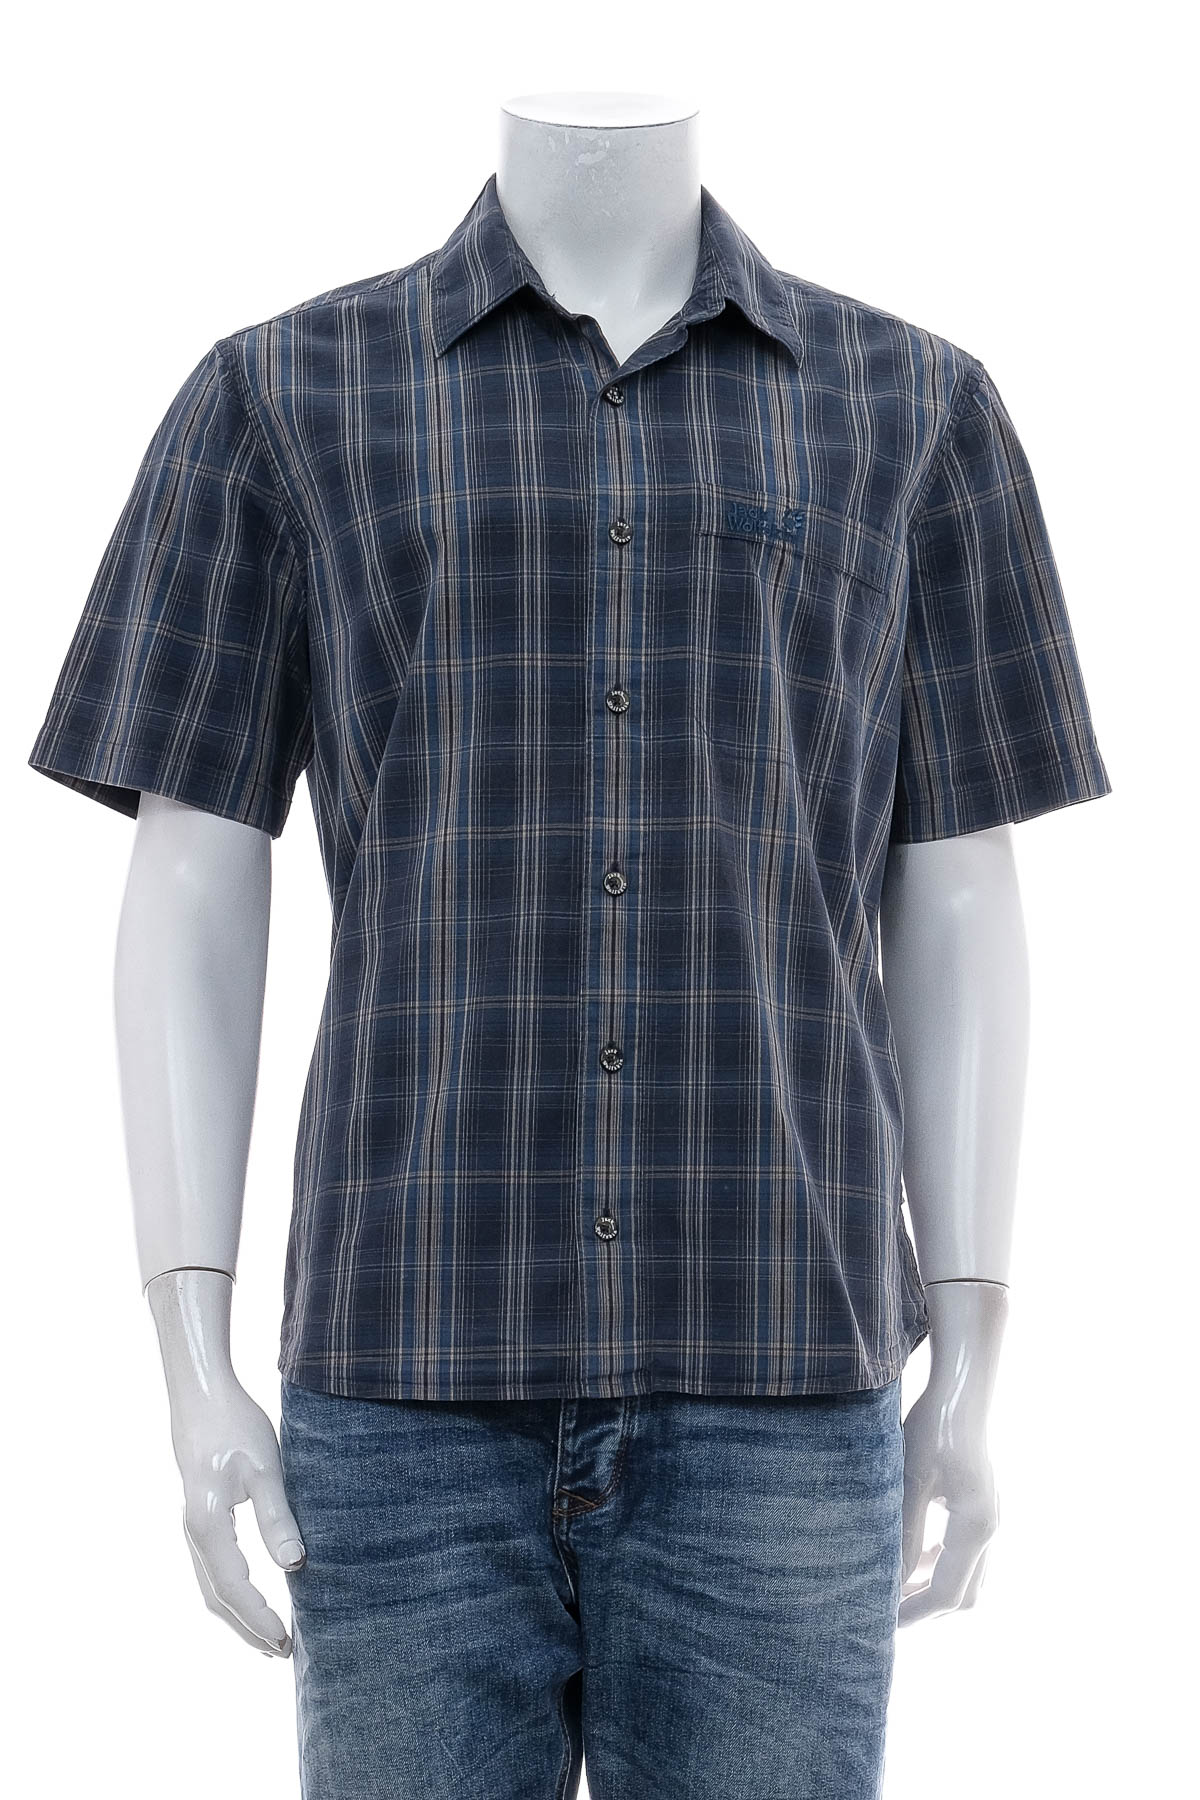 Ανδρικό πουκάμισο - Jack Wolfskin - 0